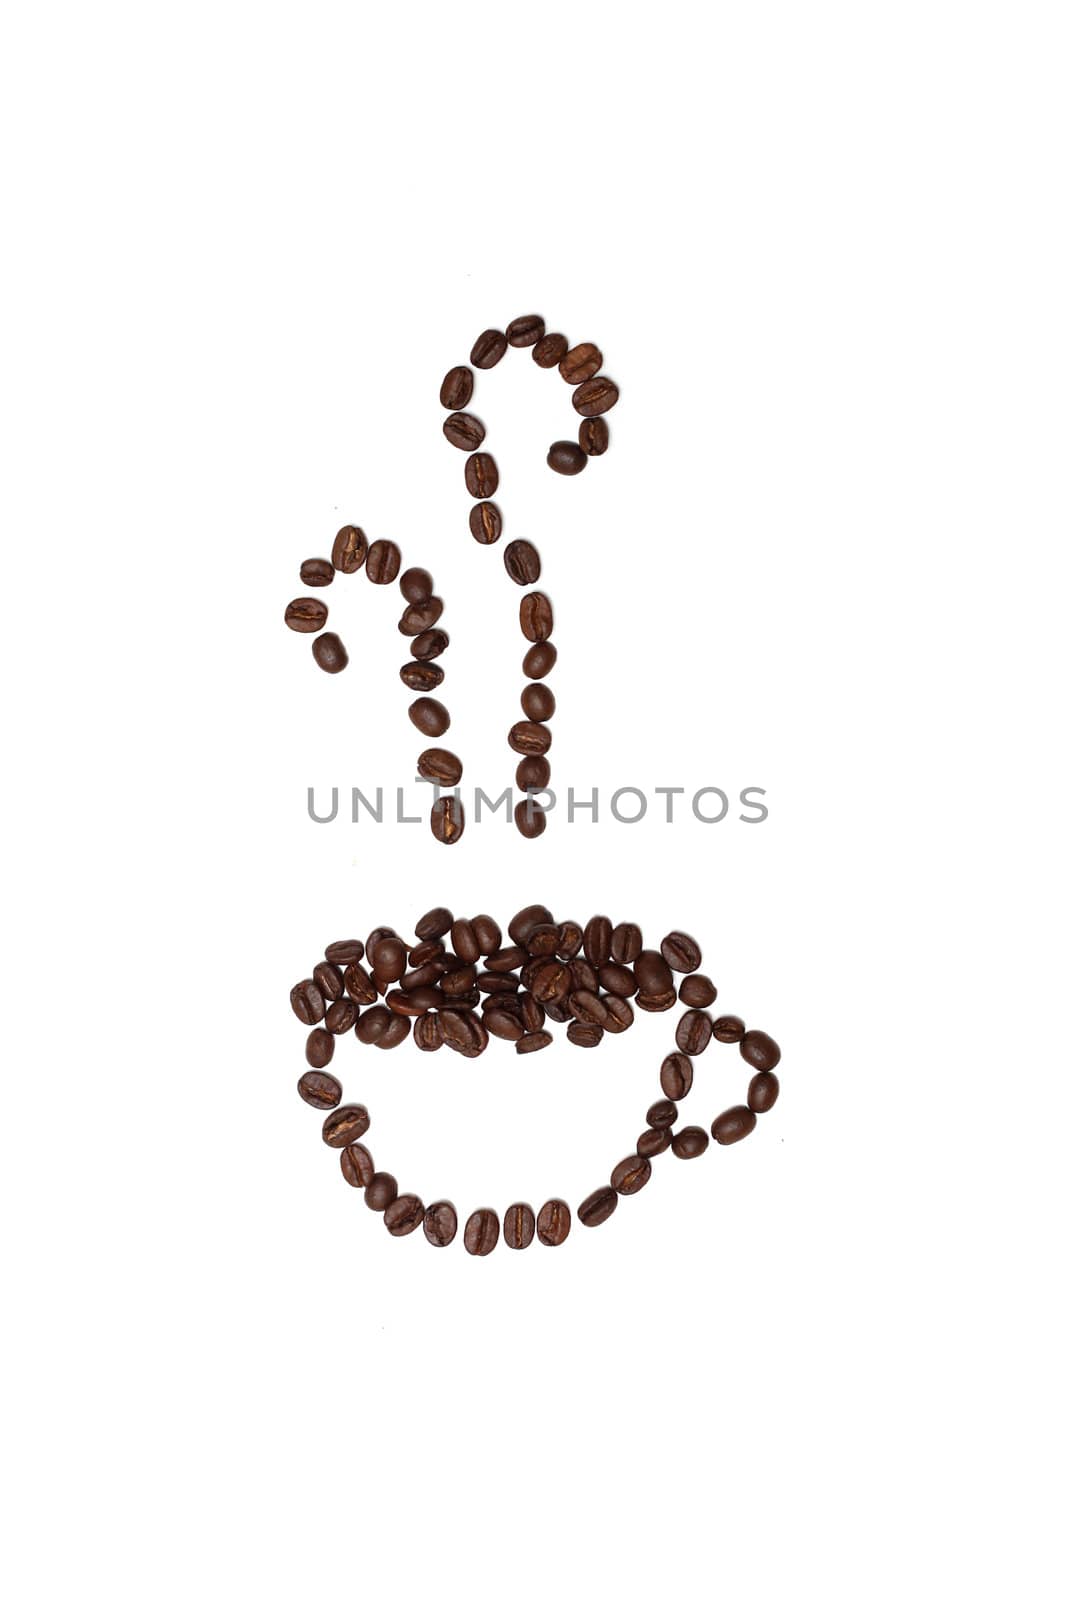 Coffee bean cup by leeser